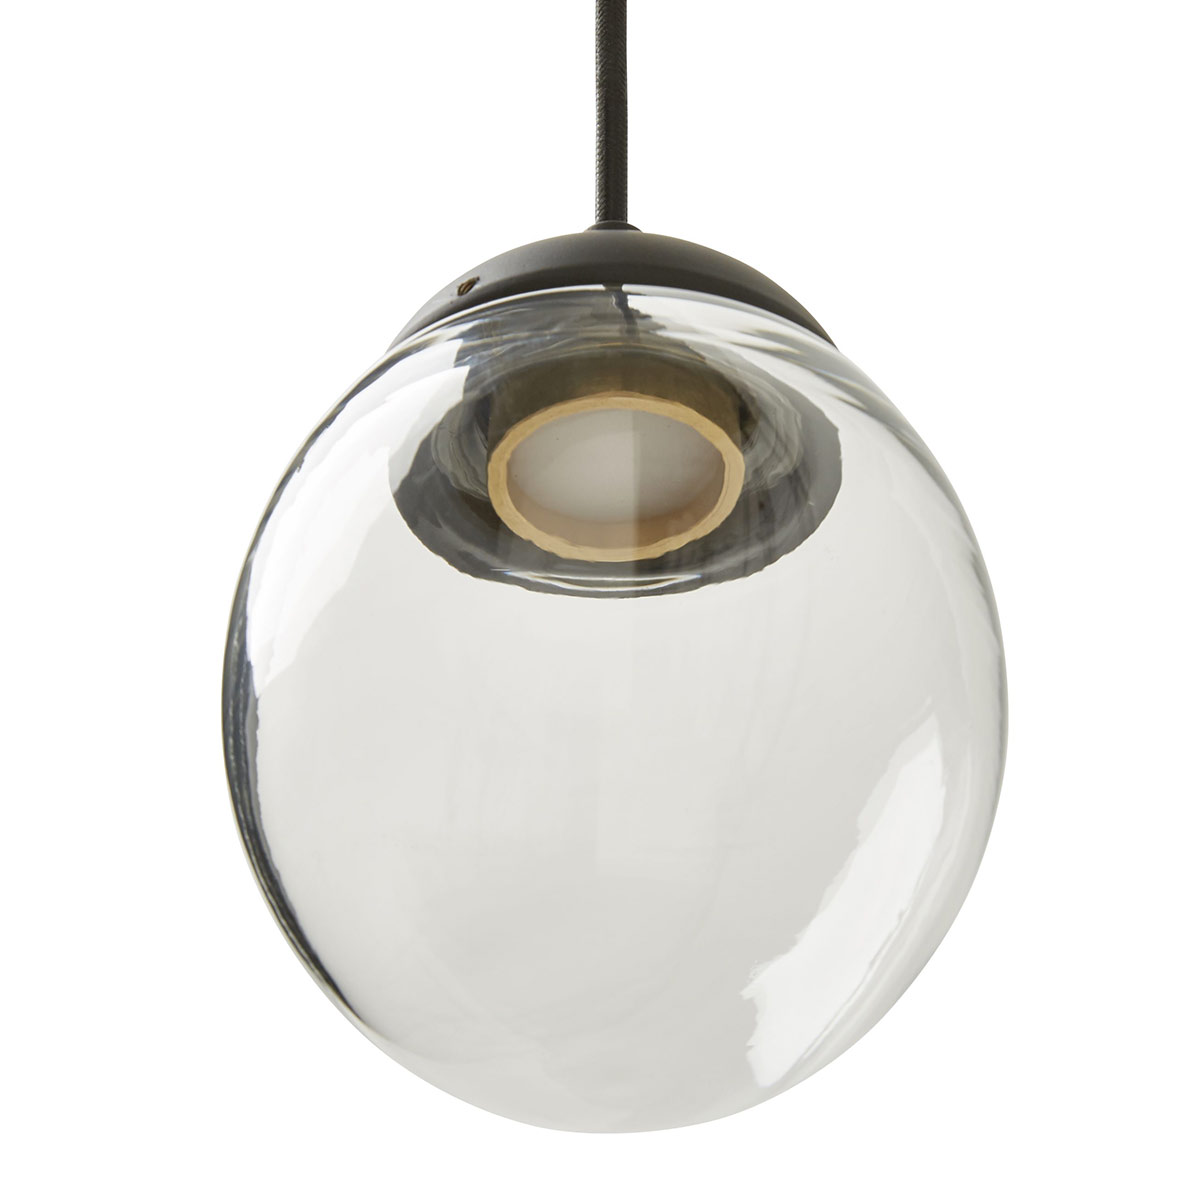 Reihe aus fünf Glasschirm-Hängeleuchten VITROLO (LED) auf Leiste: Glasschirm in rundlicher Tropfen-Form, klares Glas